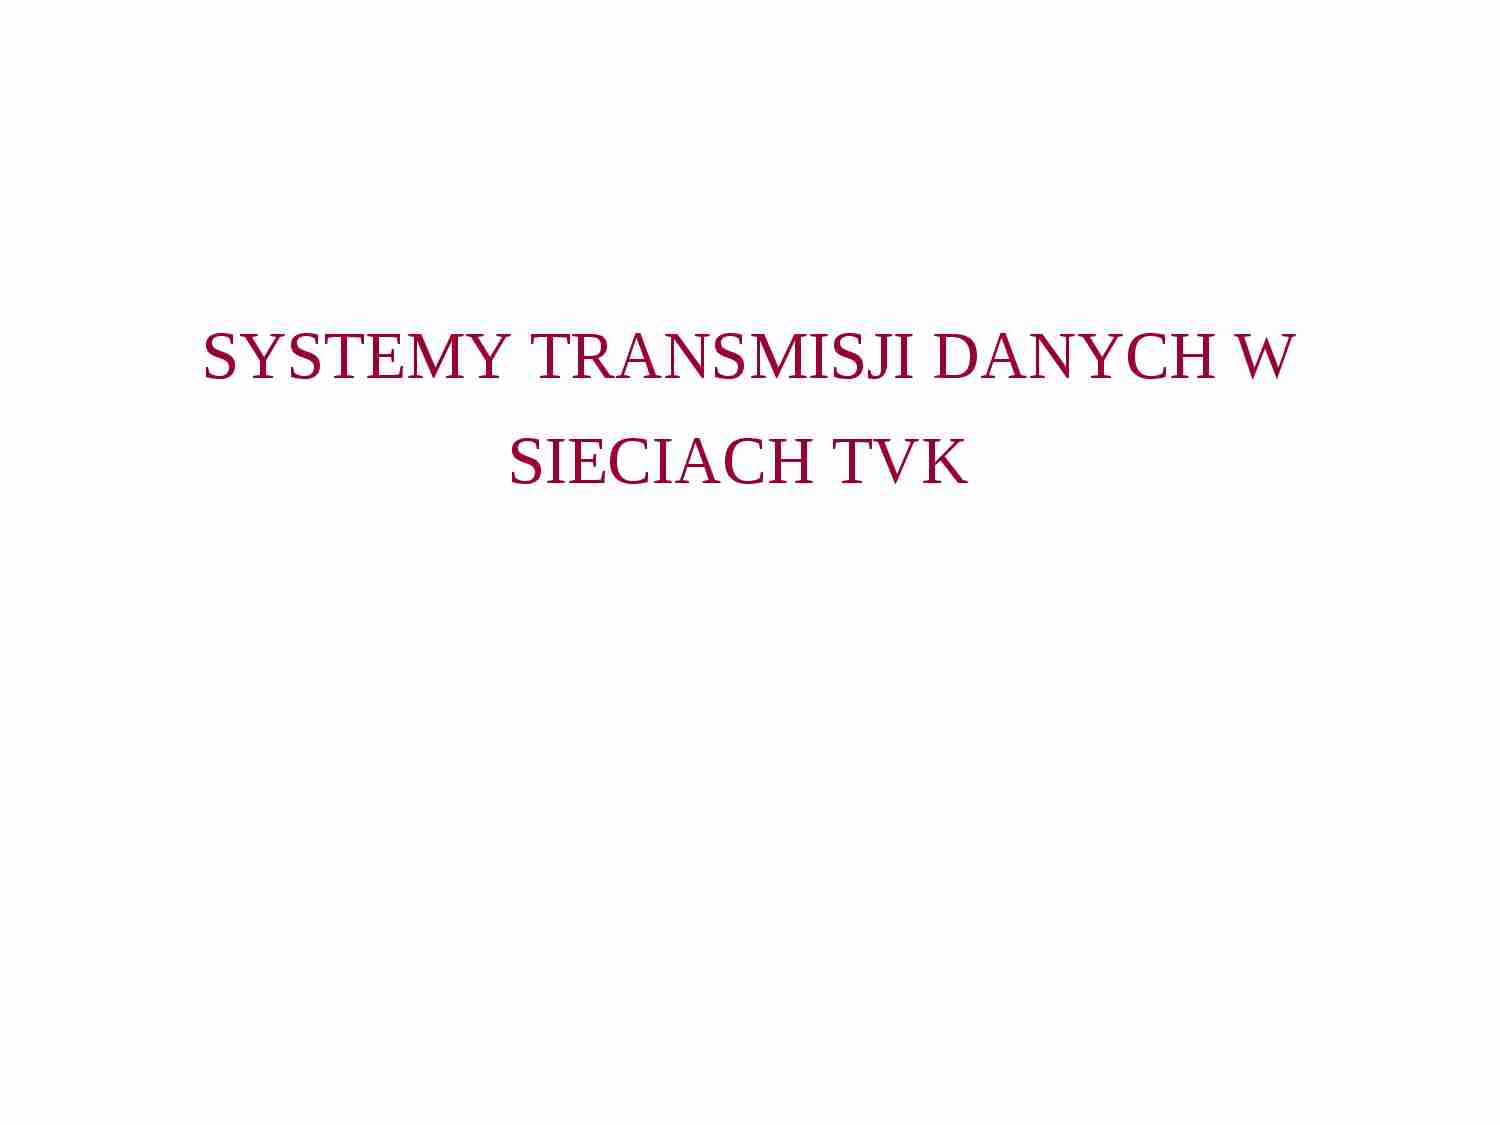 Systemy transmisji danych w sieciach TVK - strona 1